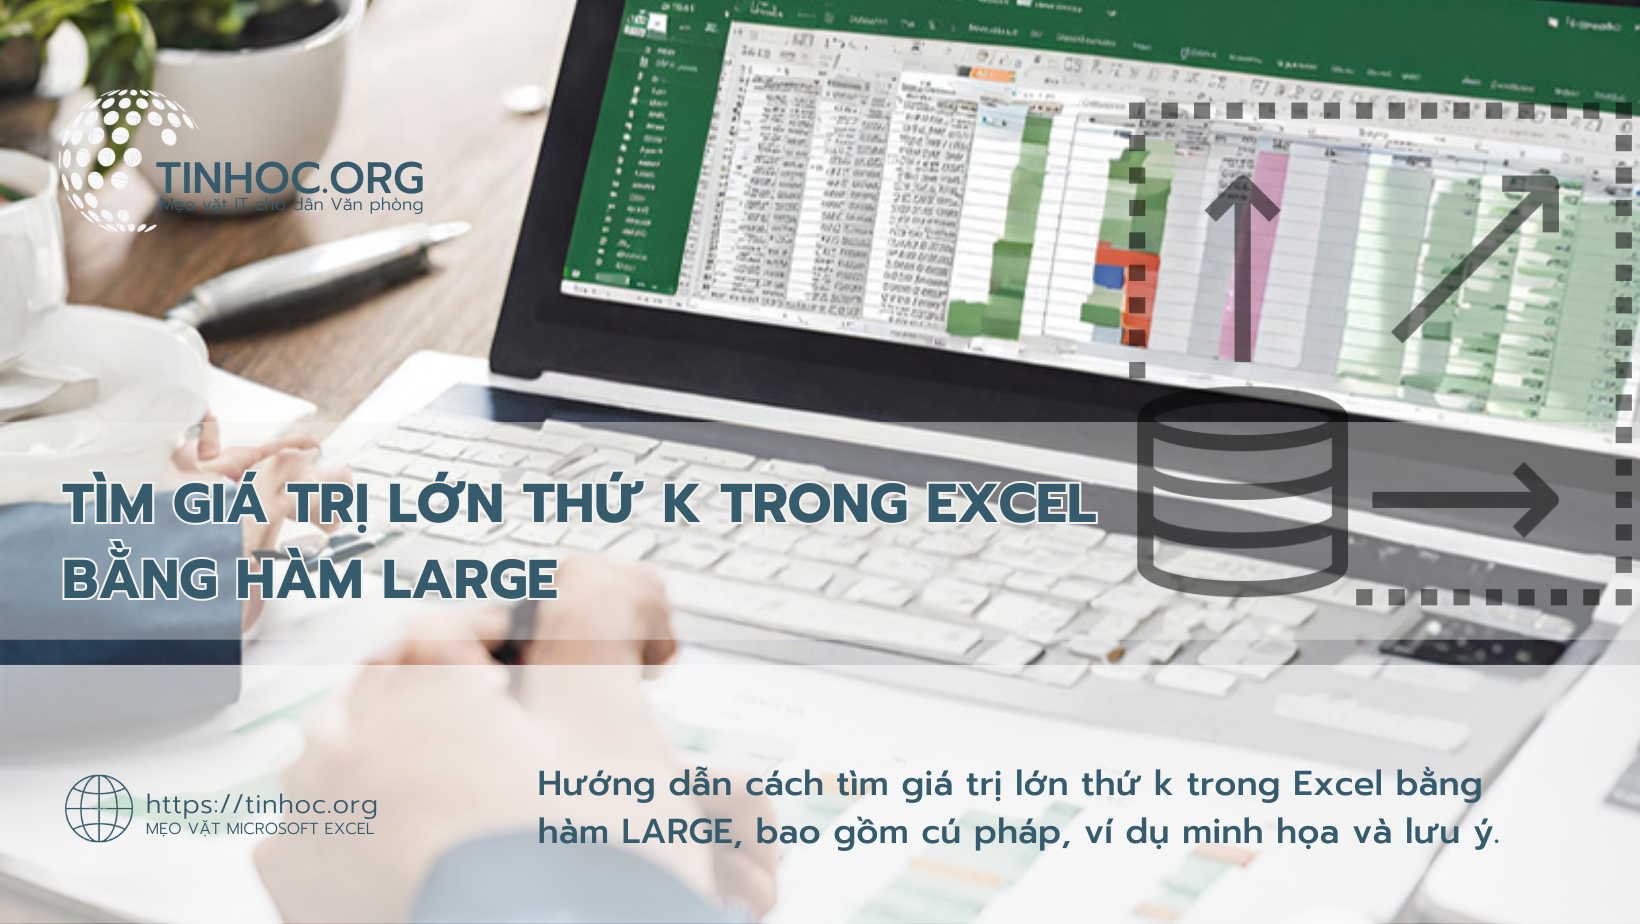 Hướng dẫn cách tìm giá trị lớn thứ k trong Excel bằng hàm LARGE, bao gồm cú pháp, ví dụ minh họa và lưu ý.